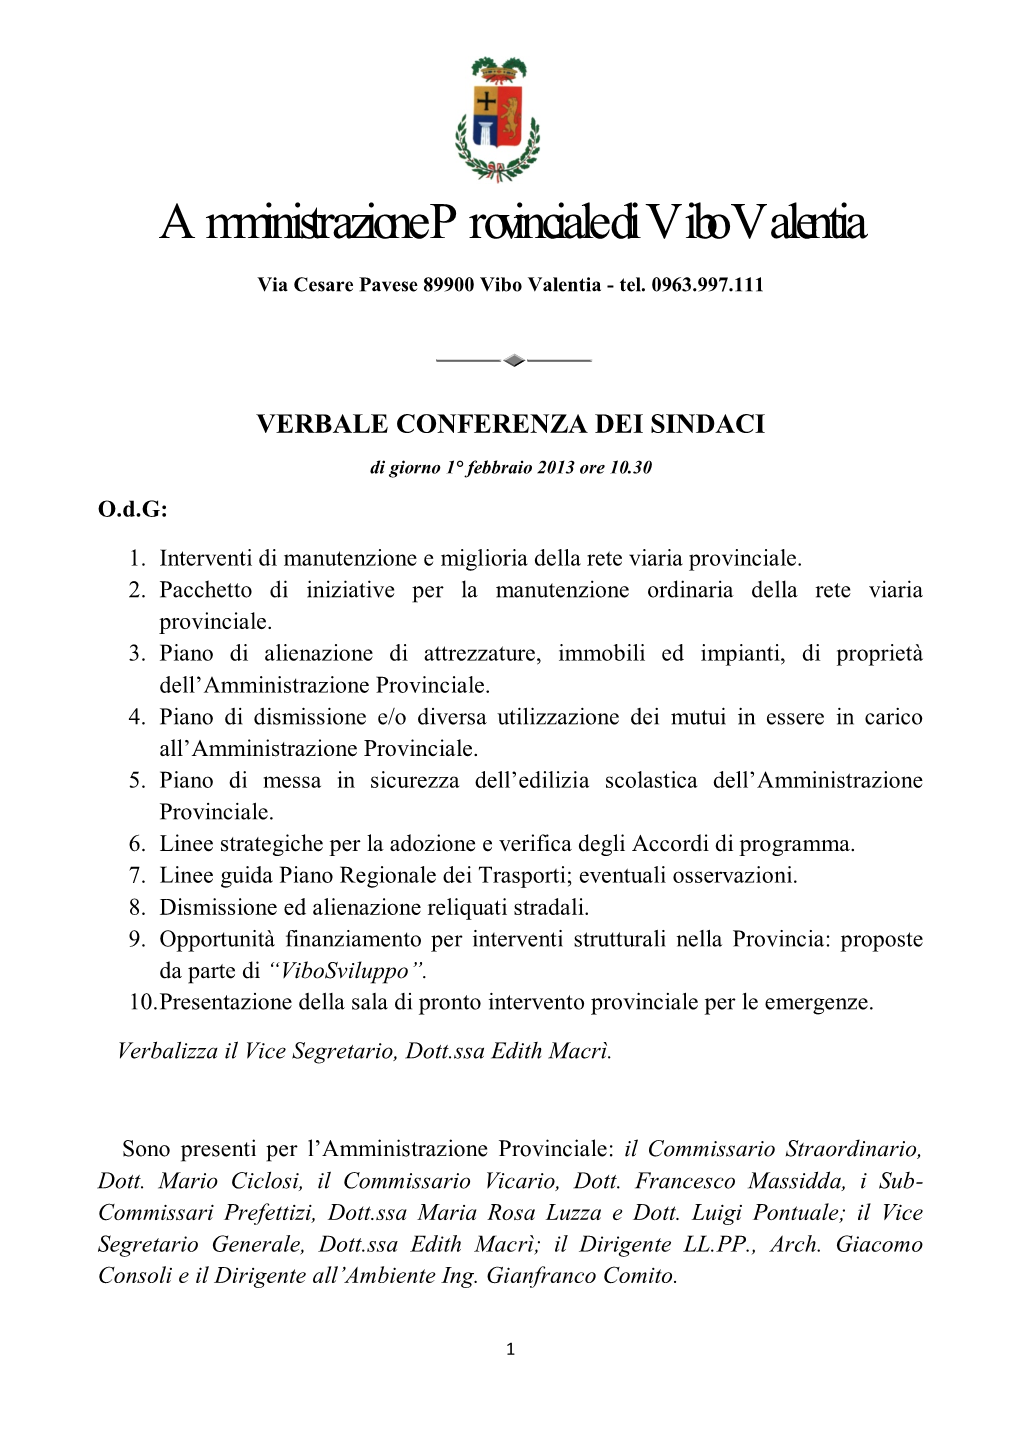 Amministrazione Provinciale Di Vibo Valentia Via Cesare Pavese 89900 Vibo Valentia - Tel